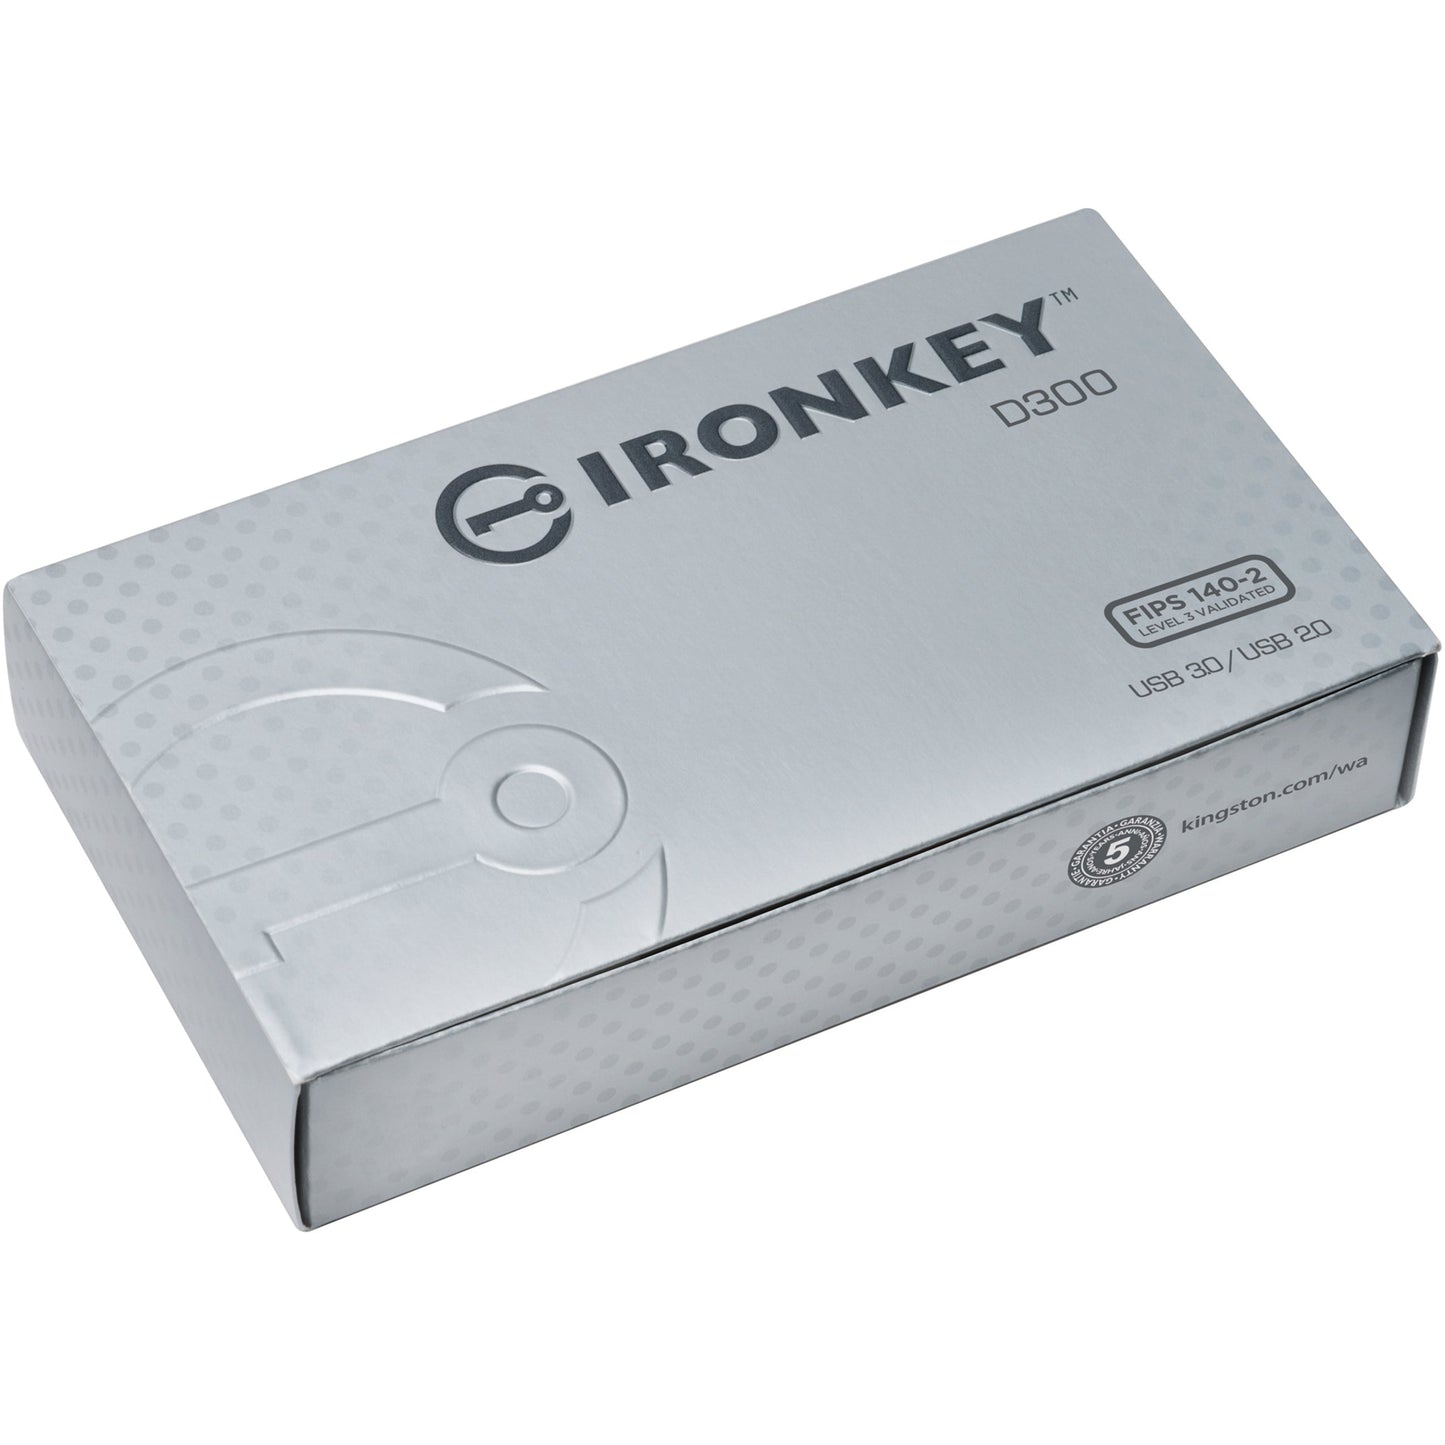 Kingston 32GB IronKey D300 USB 3.1 Flash Drive